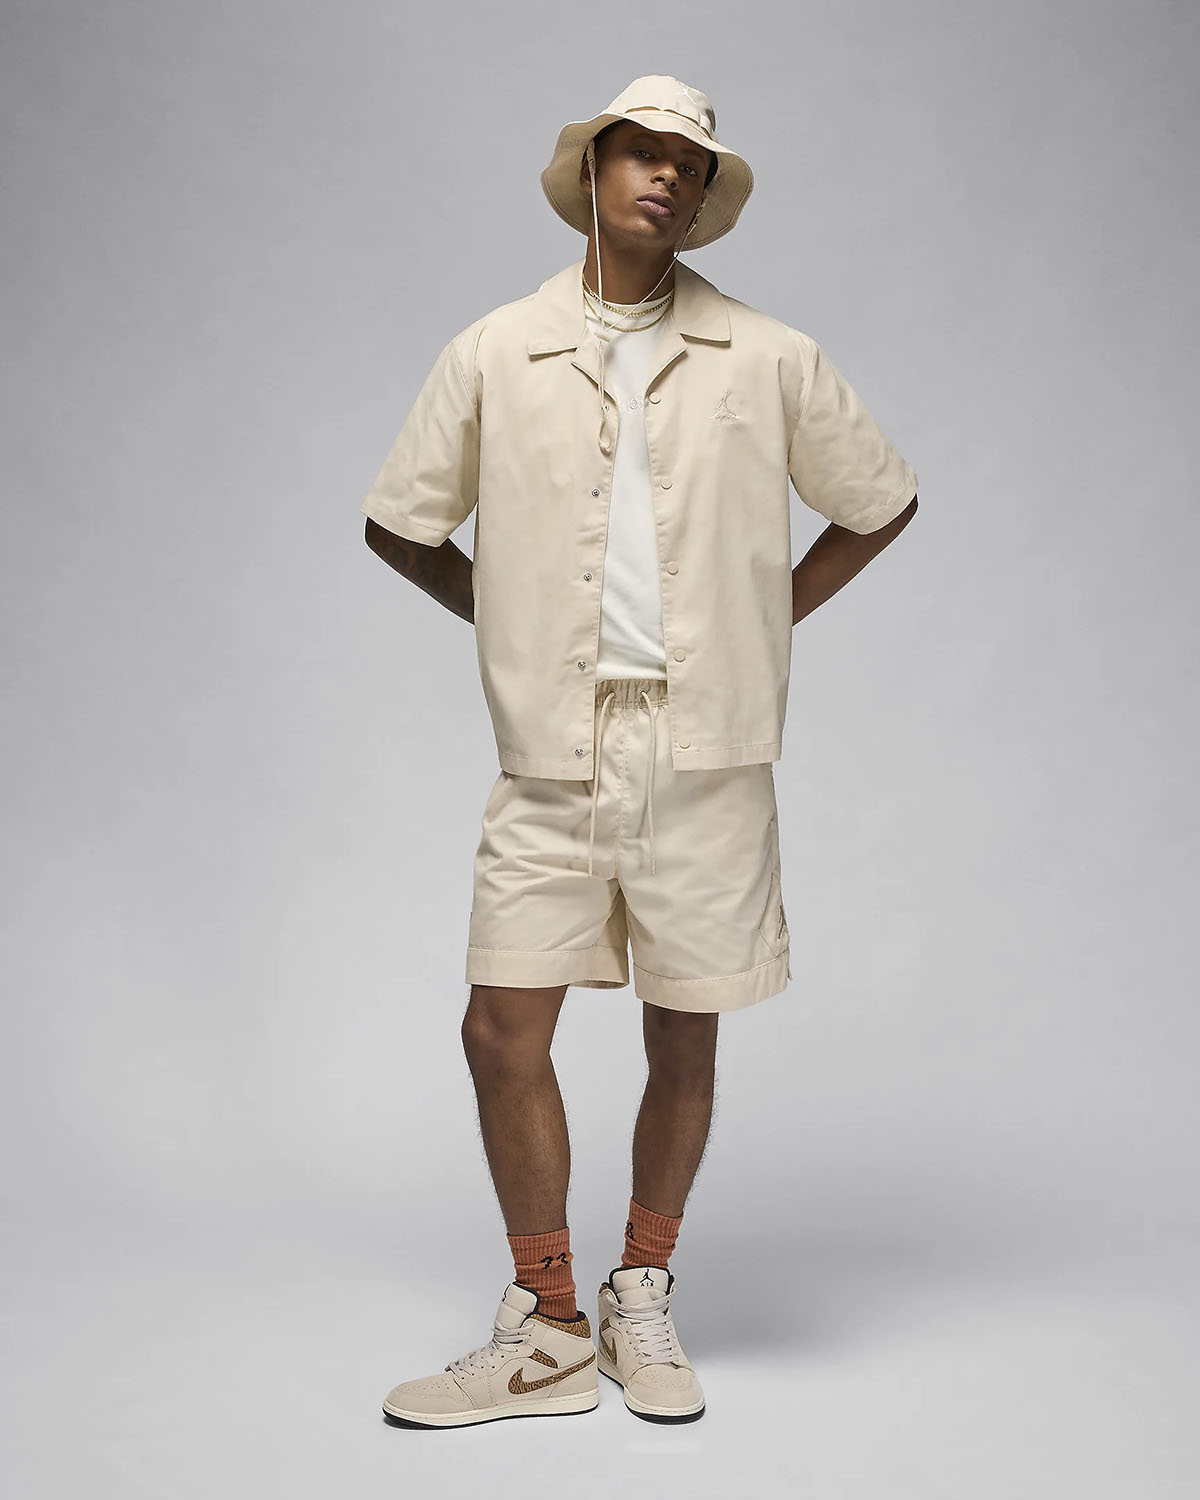 jordan ao9944 Legend Light Brown Shirt Shorts Hat Outfit